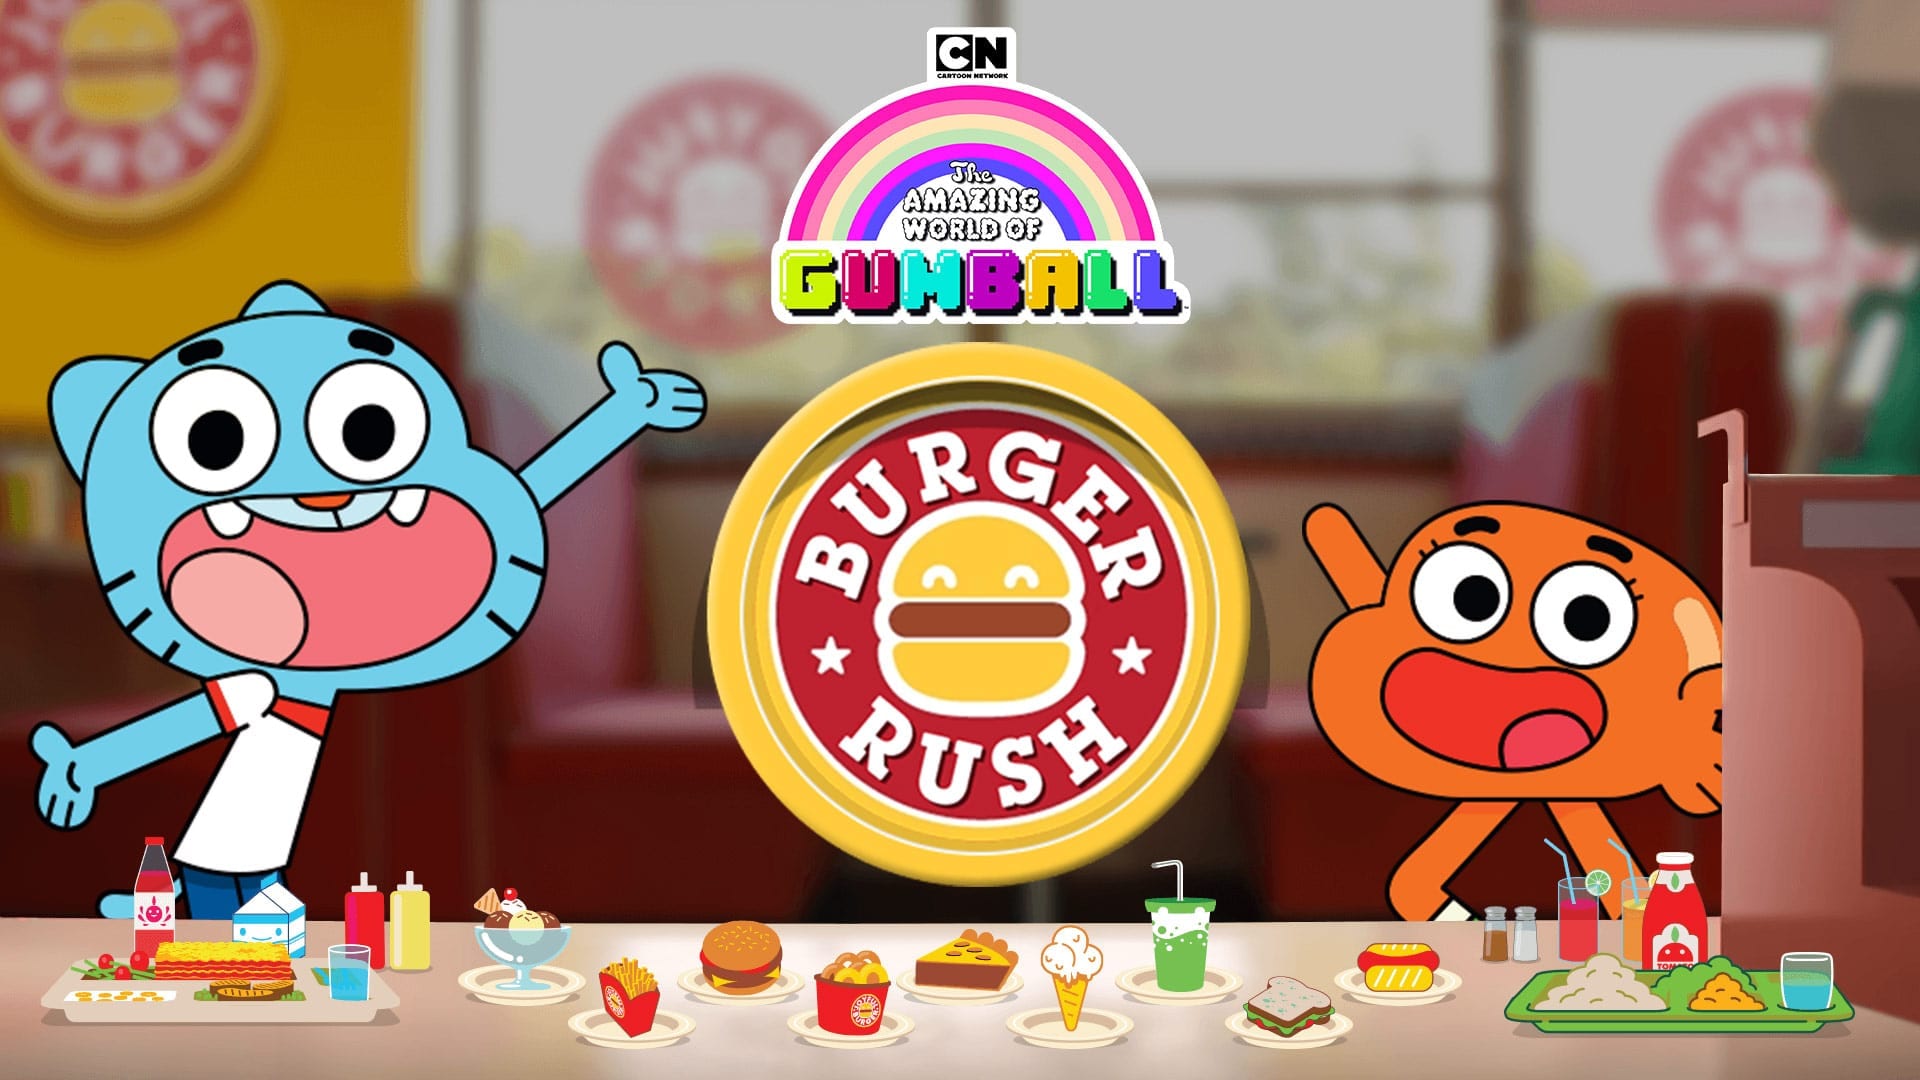 Burger Rush, The Amazing World of Gumball